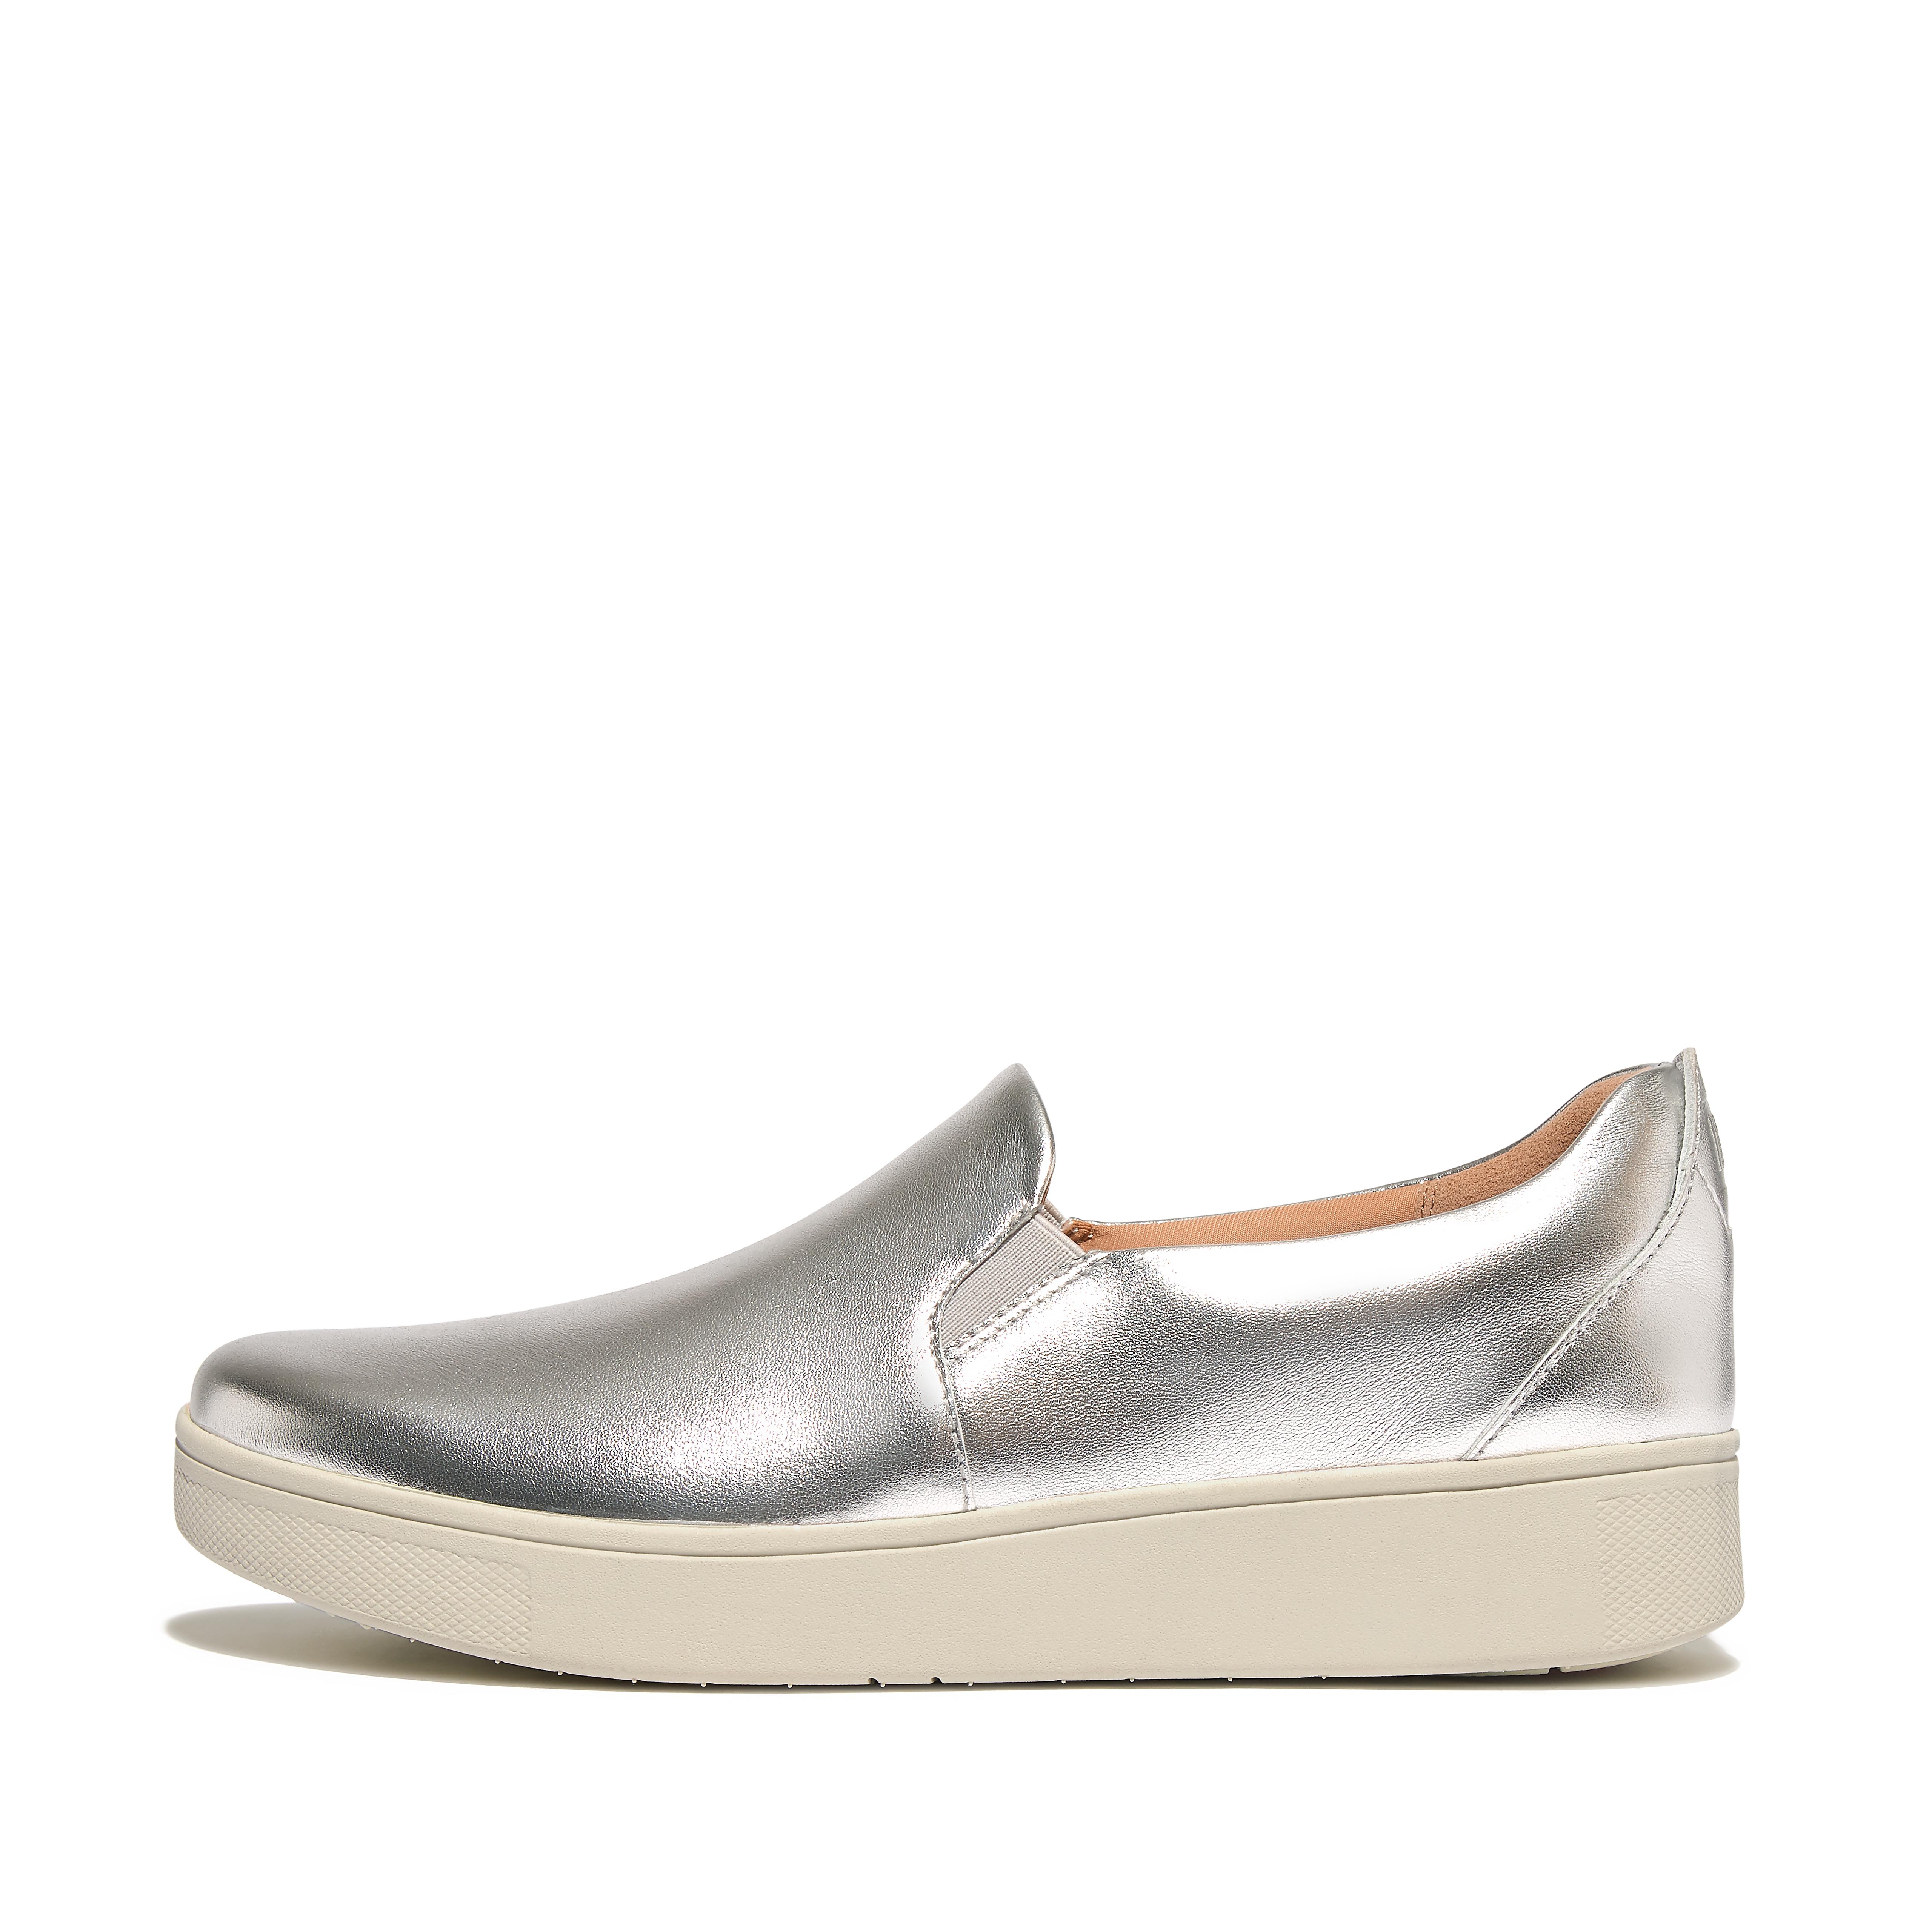 핏플랍 슬립온 스니커즈 Fitflop Metallic-Leather Slip-On Skate Sneakers,Silver